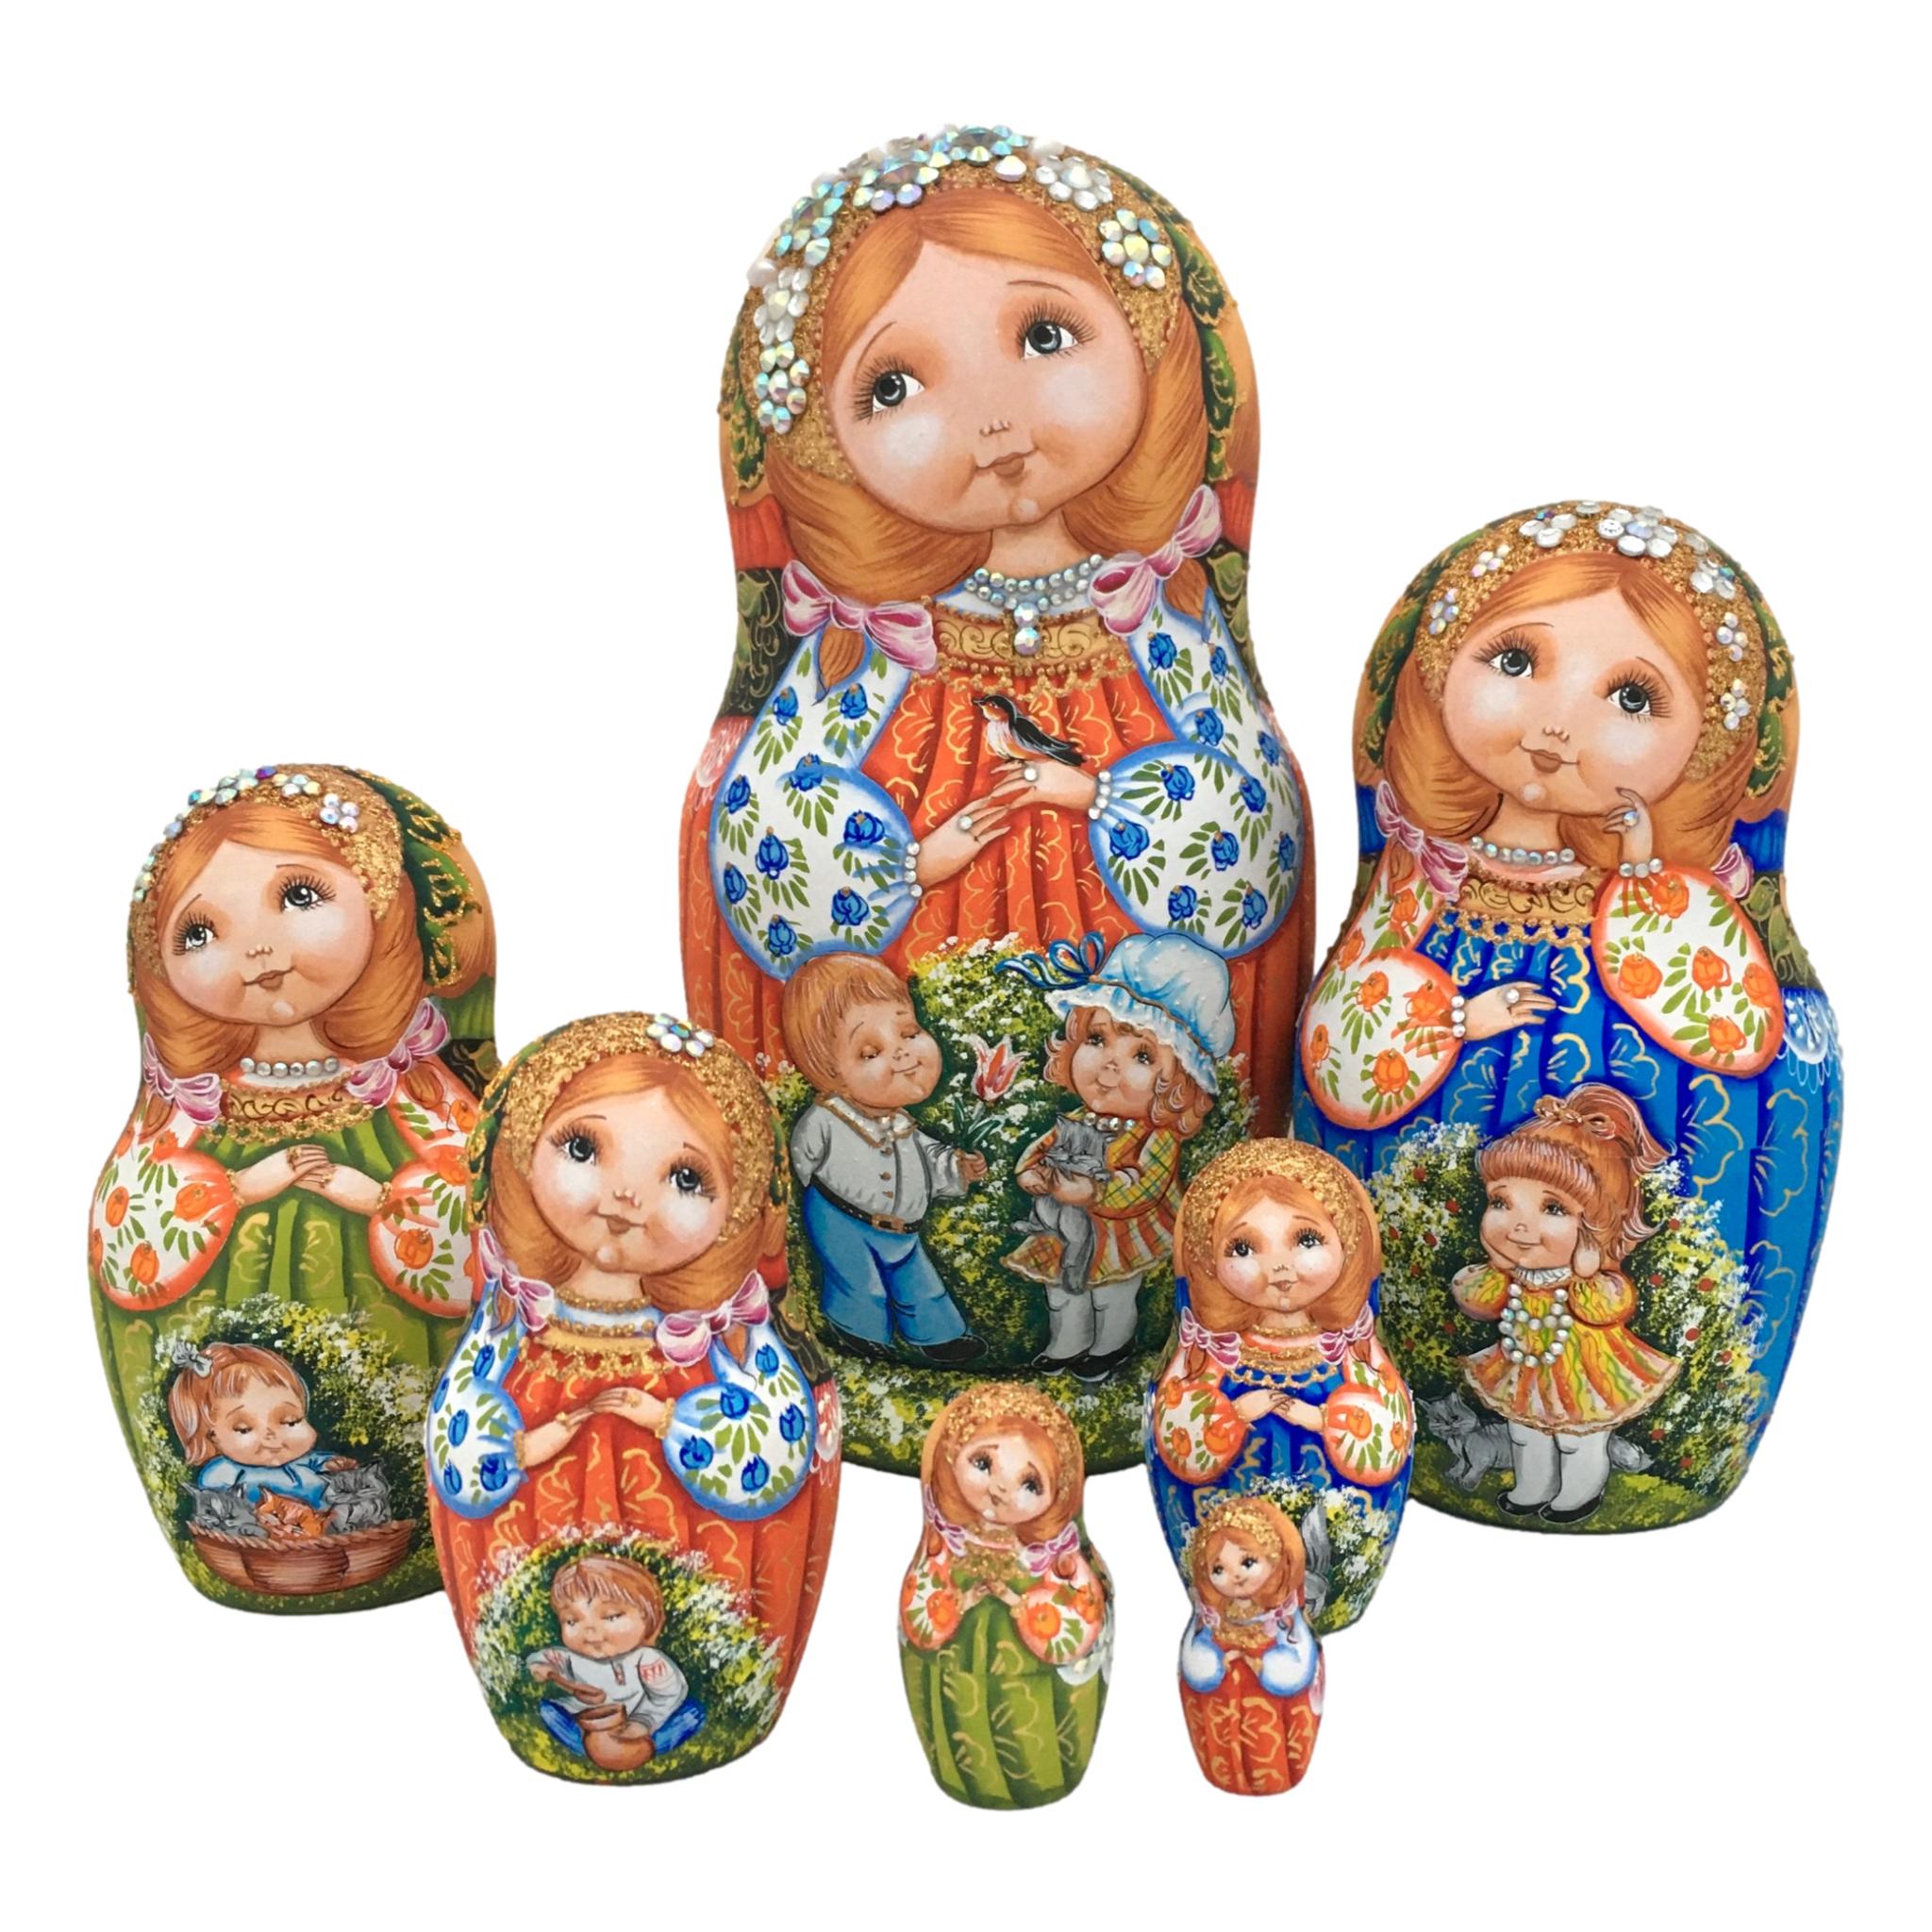 Unique Russian Nesting Dolls 7 Piece Set